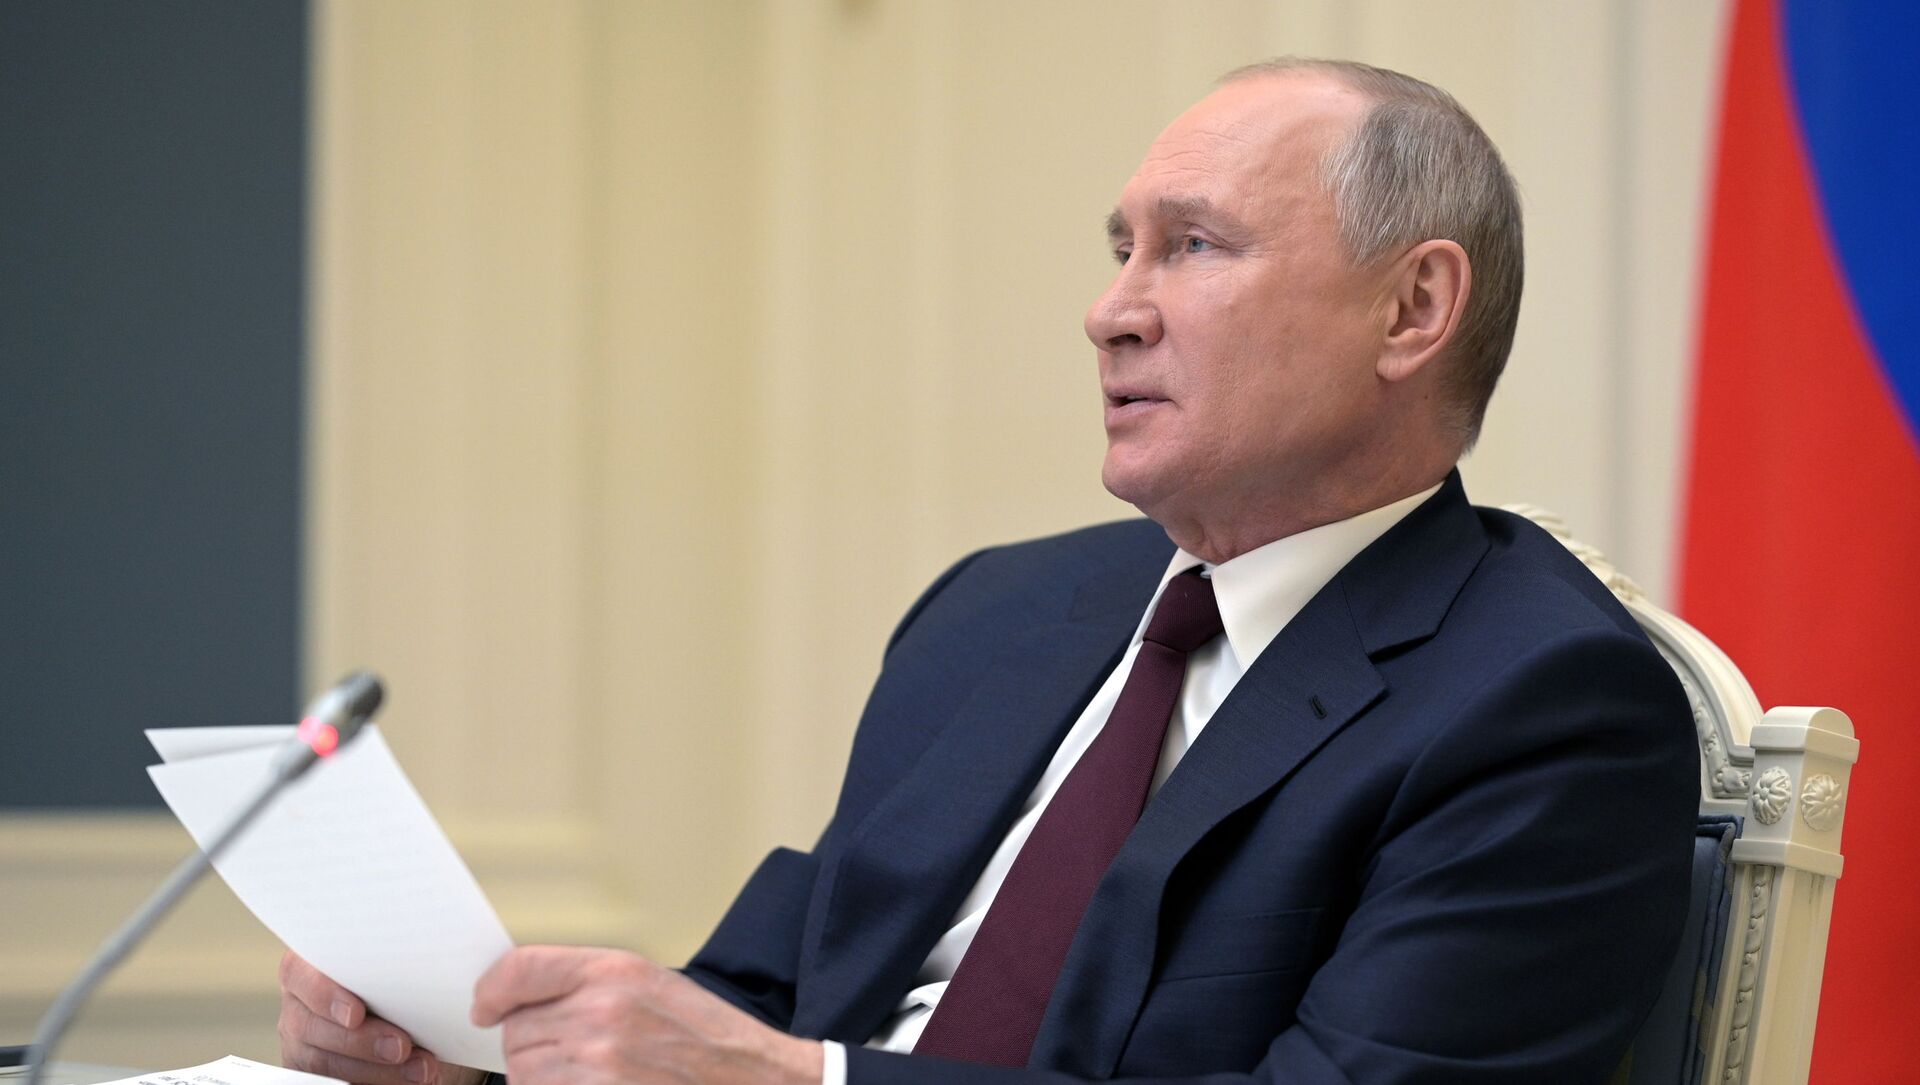 President of Russia Vladimir Putin speaks at the Leaders' summit on climate, 22 April 2021 - Sputnik International, 1920, 04.06.2021